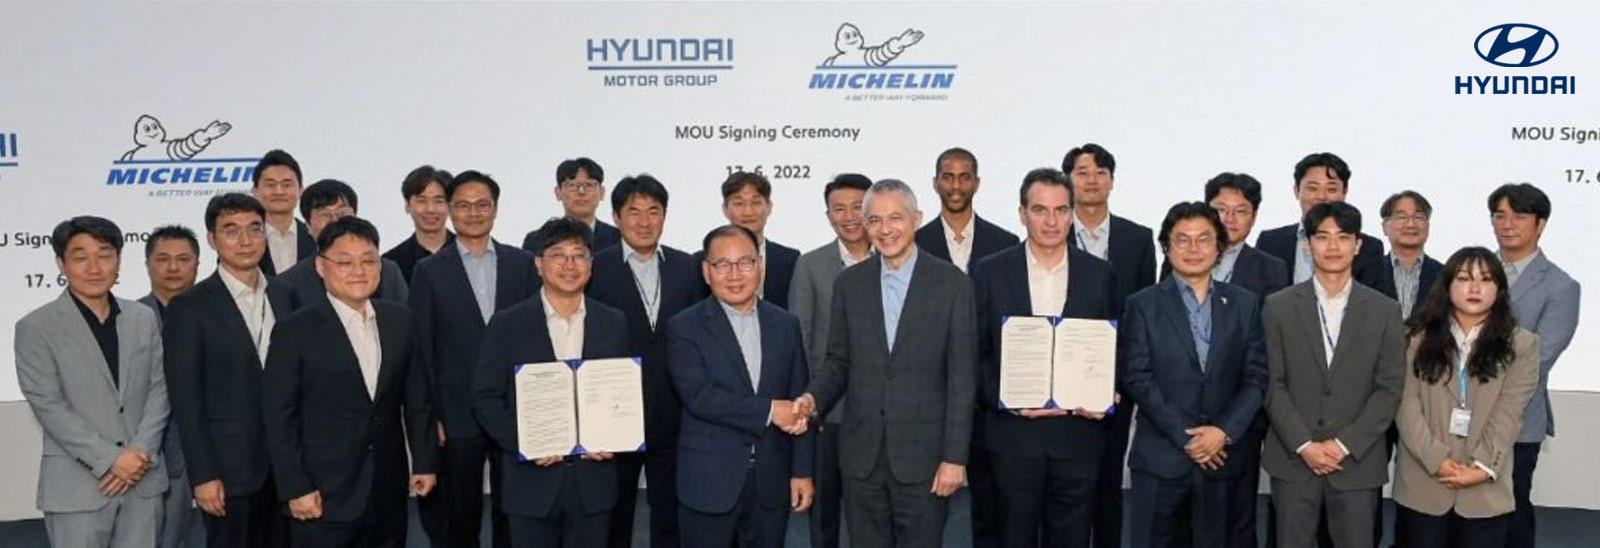 Ejecutivos de Hyundai Motors y Michellin en firma de acuerdo